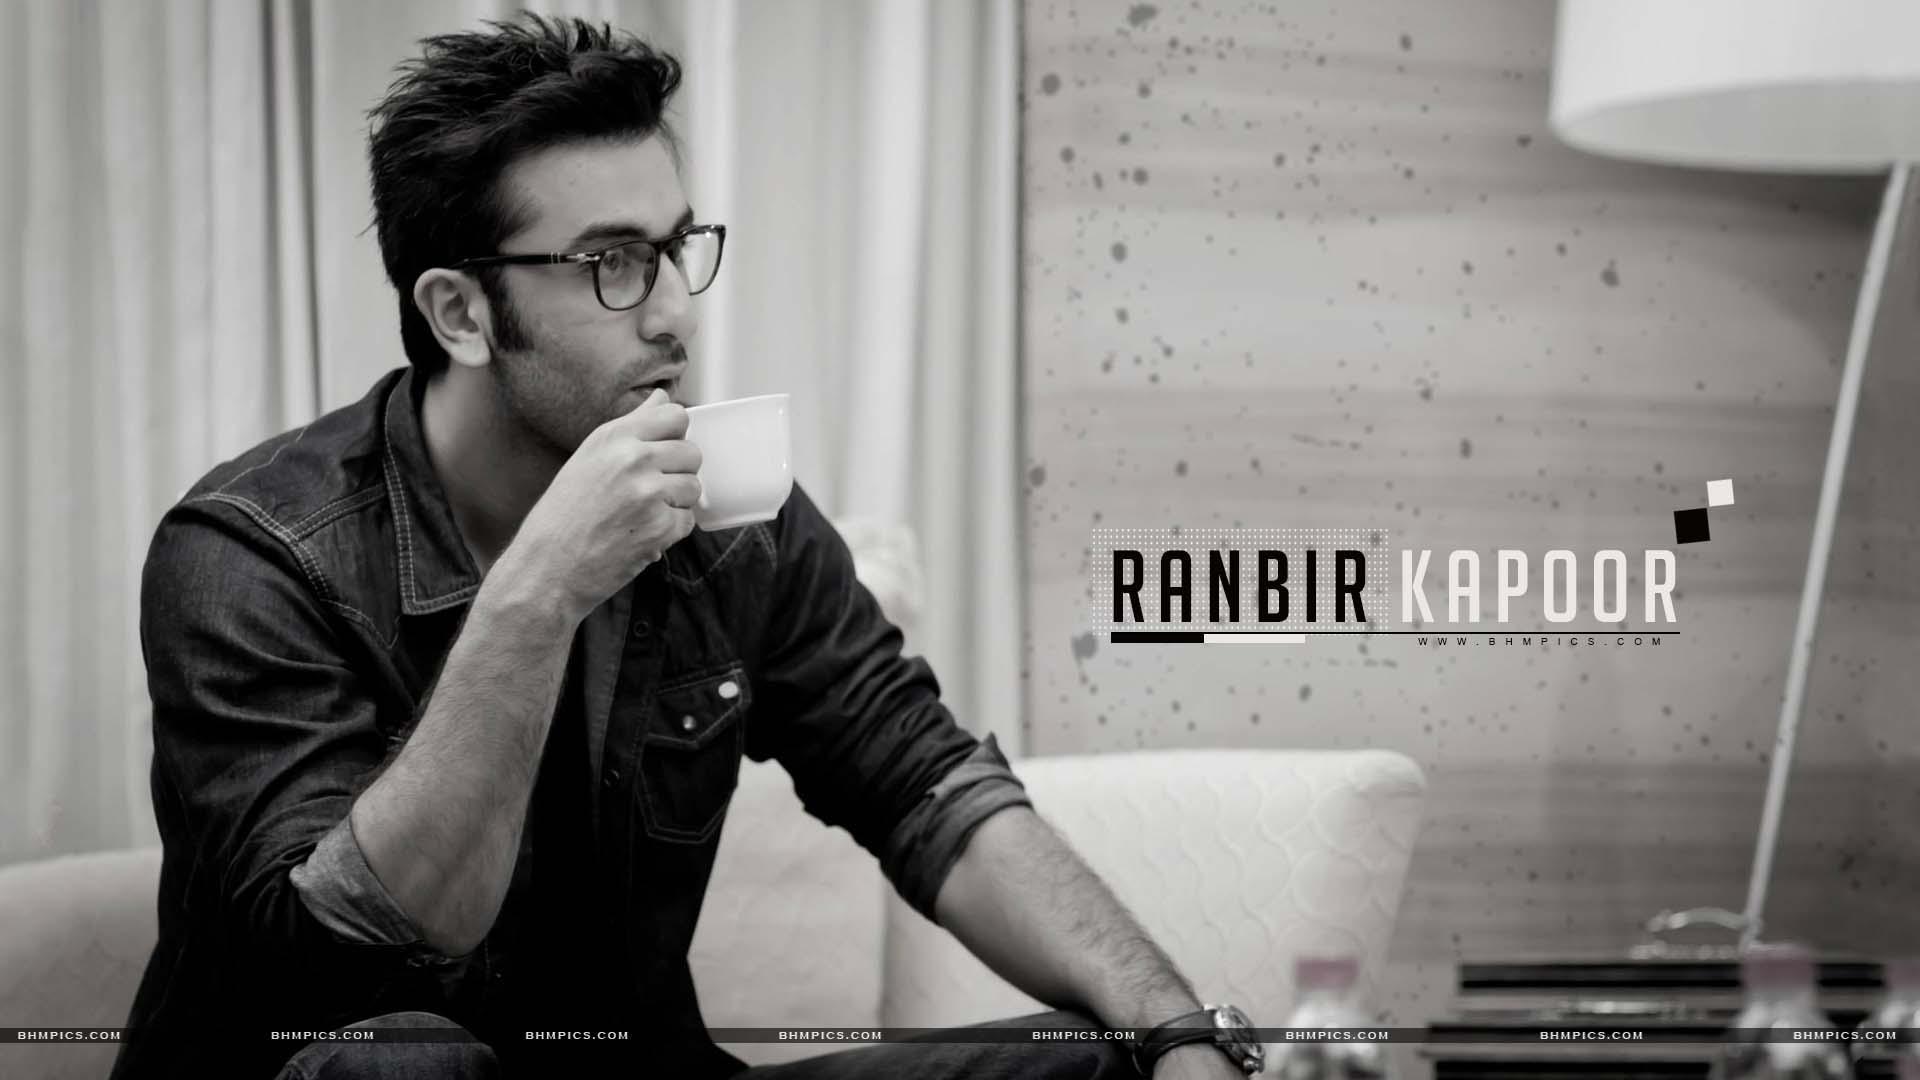 ranbir kapoor fonds d'écran hd,lunettes,police de caractère,la photographie,des lunettes,séance